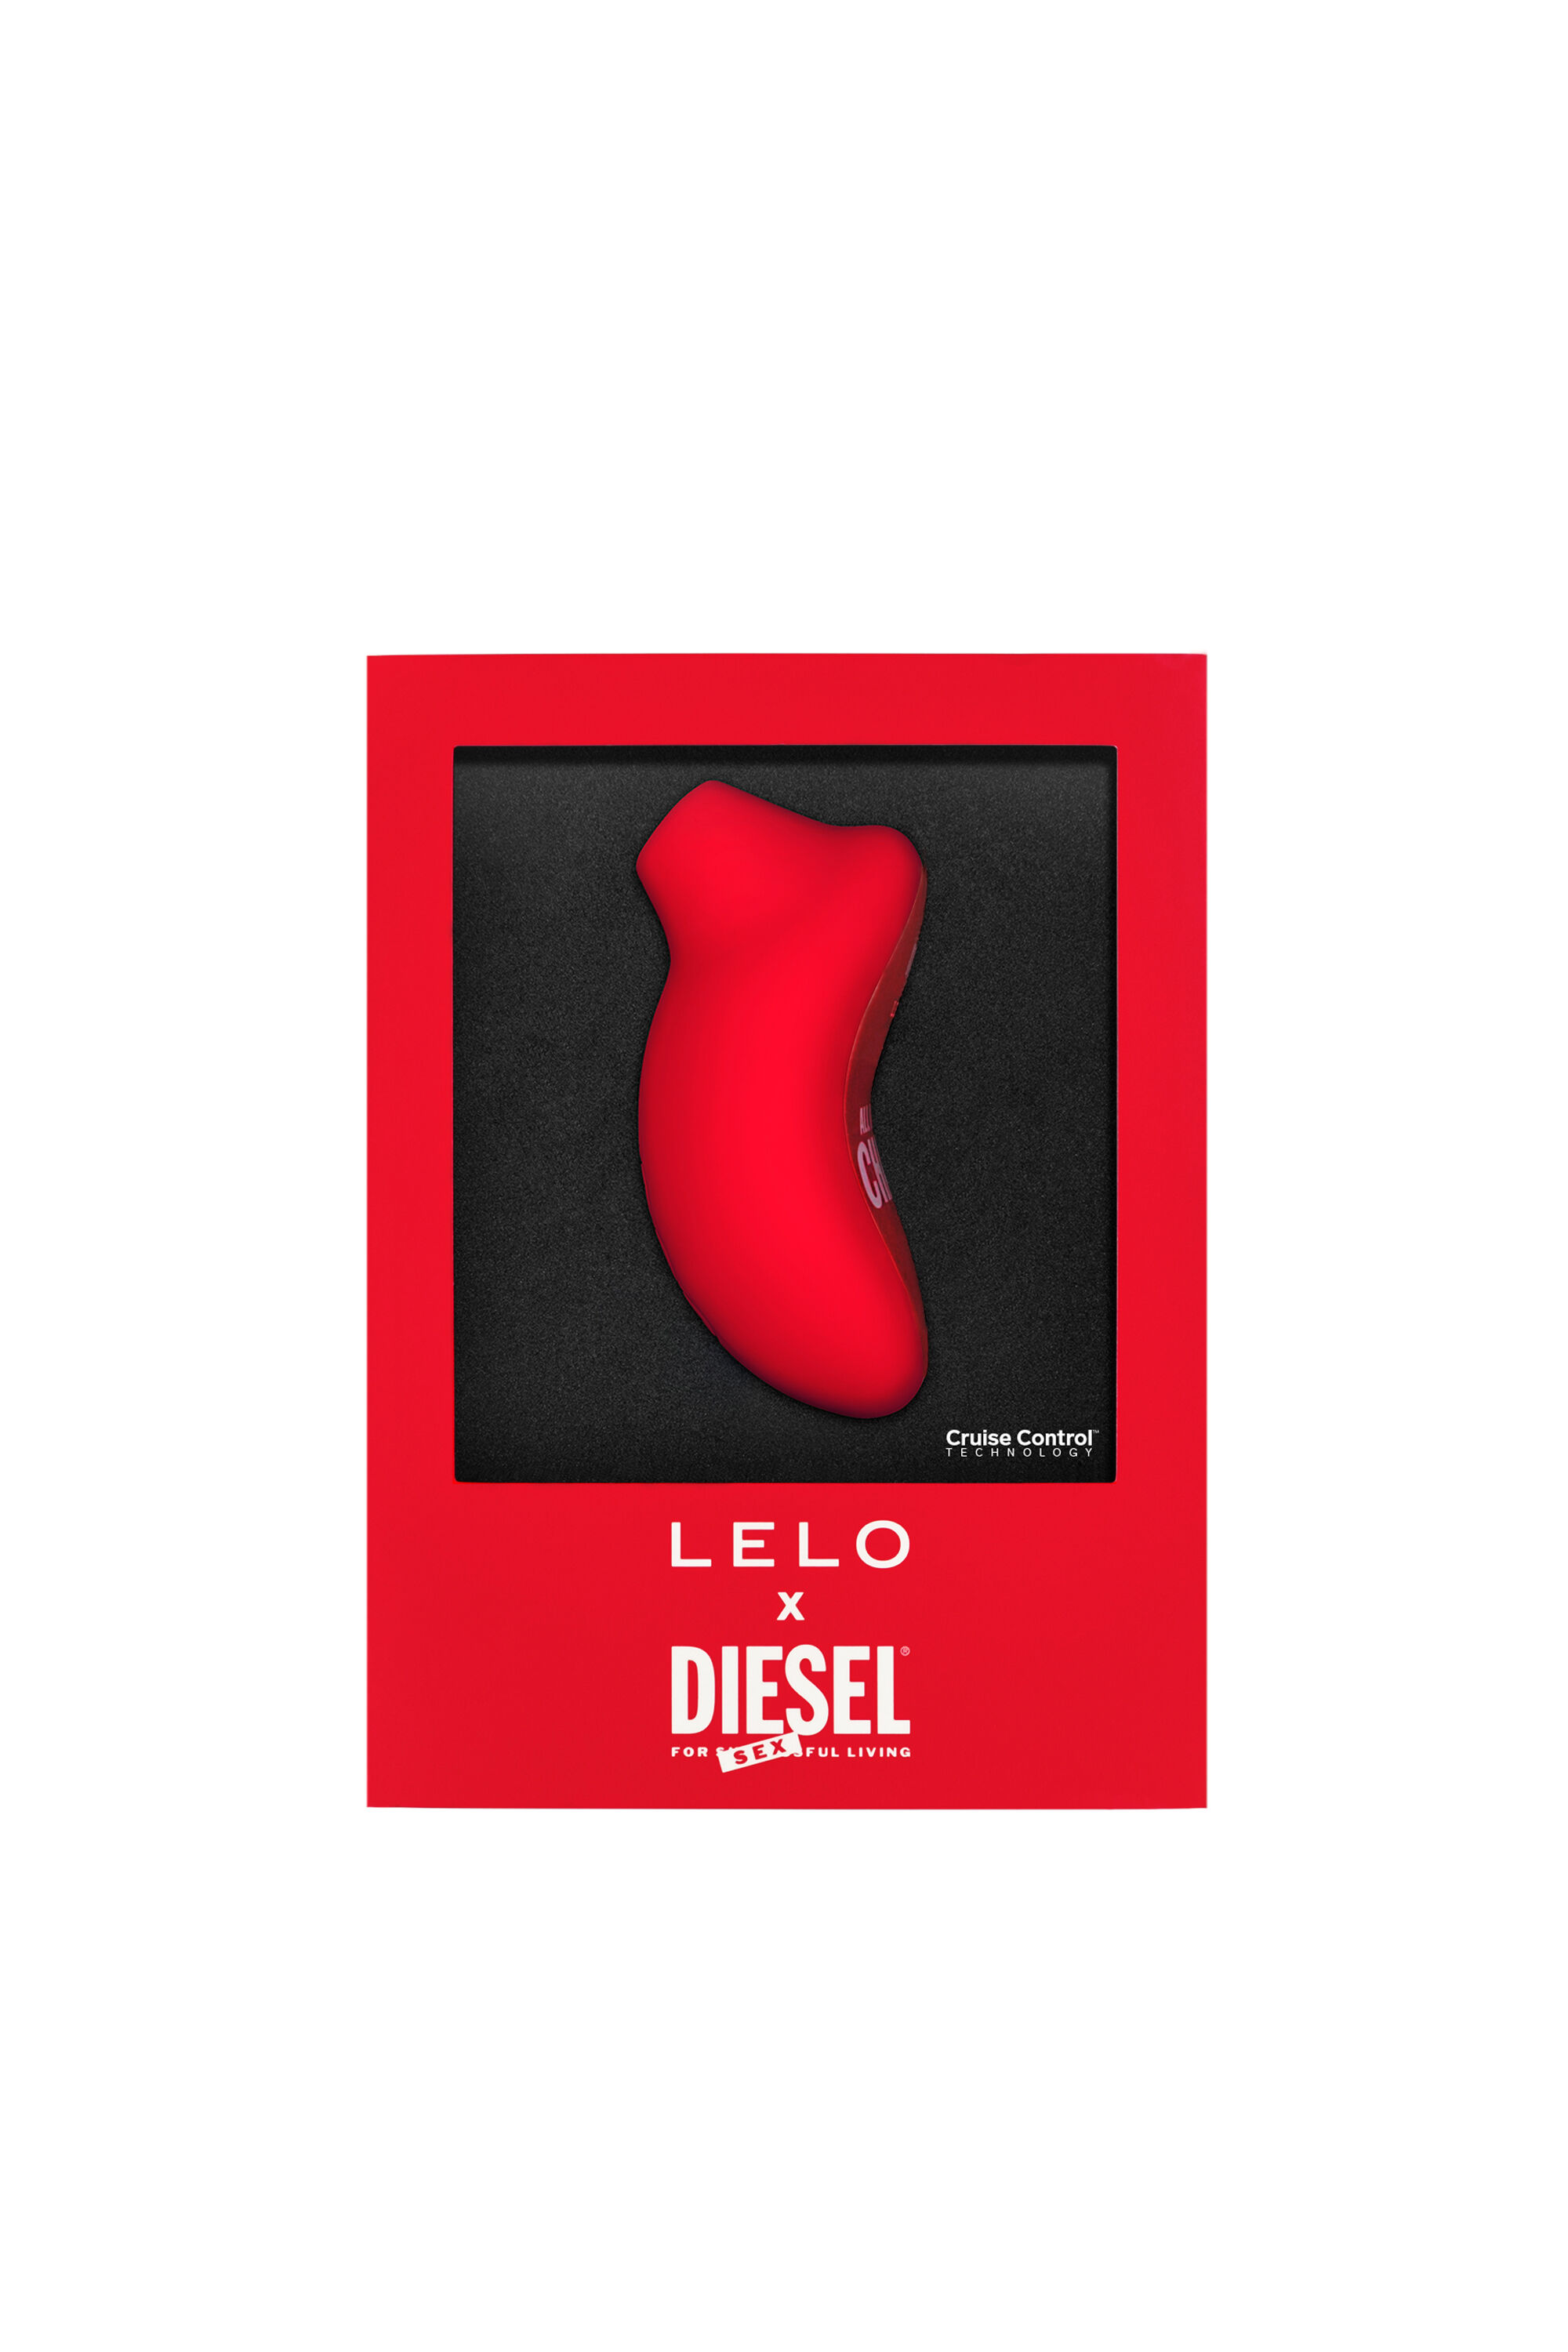 Diesel - 8687 SONA CRUISE X DIESEL, Red - Image 1